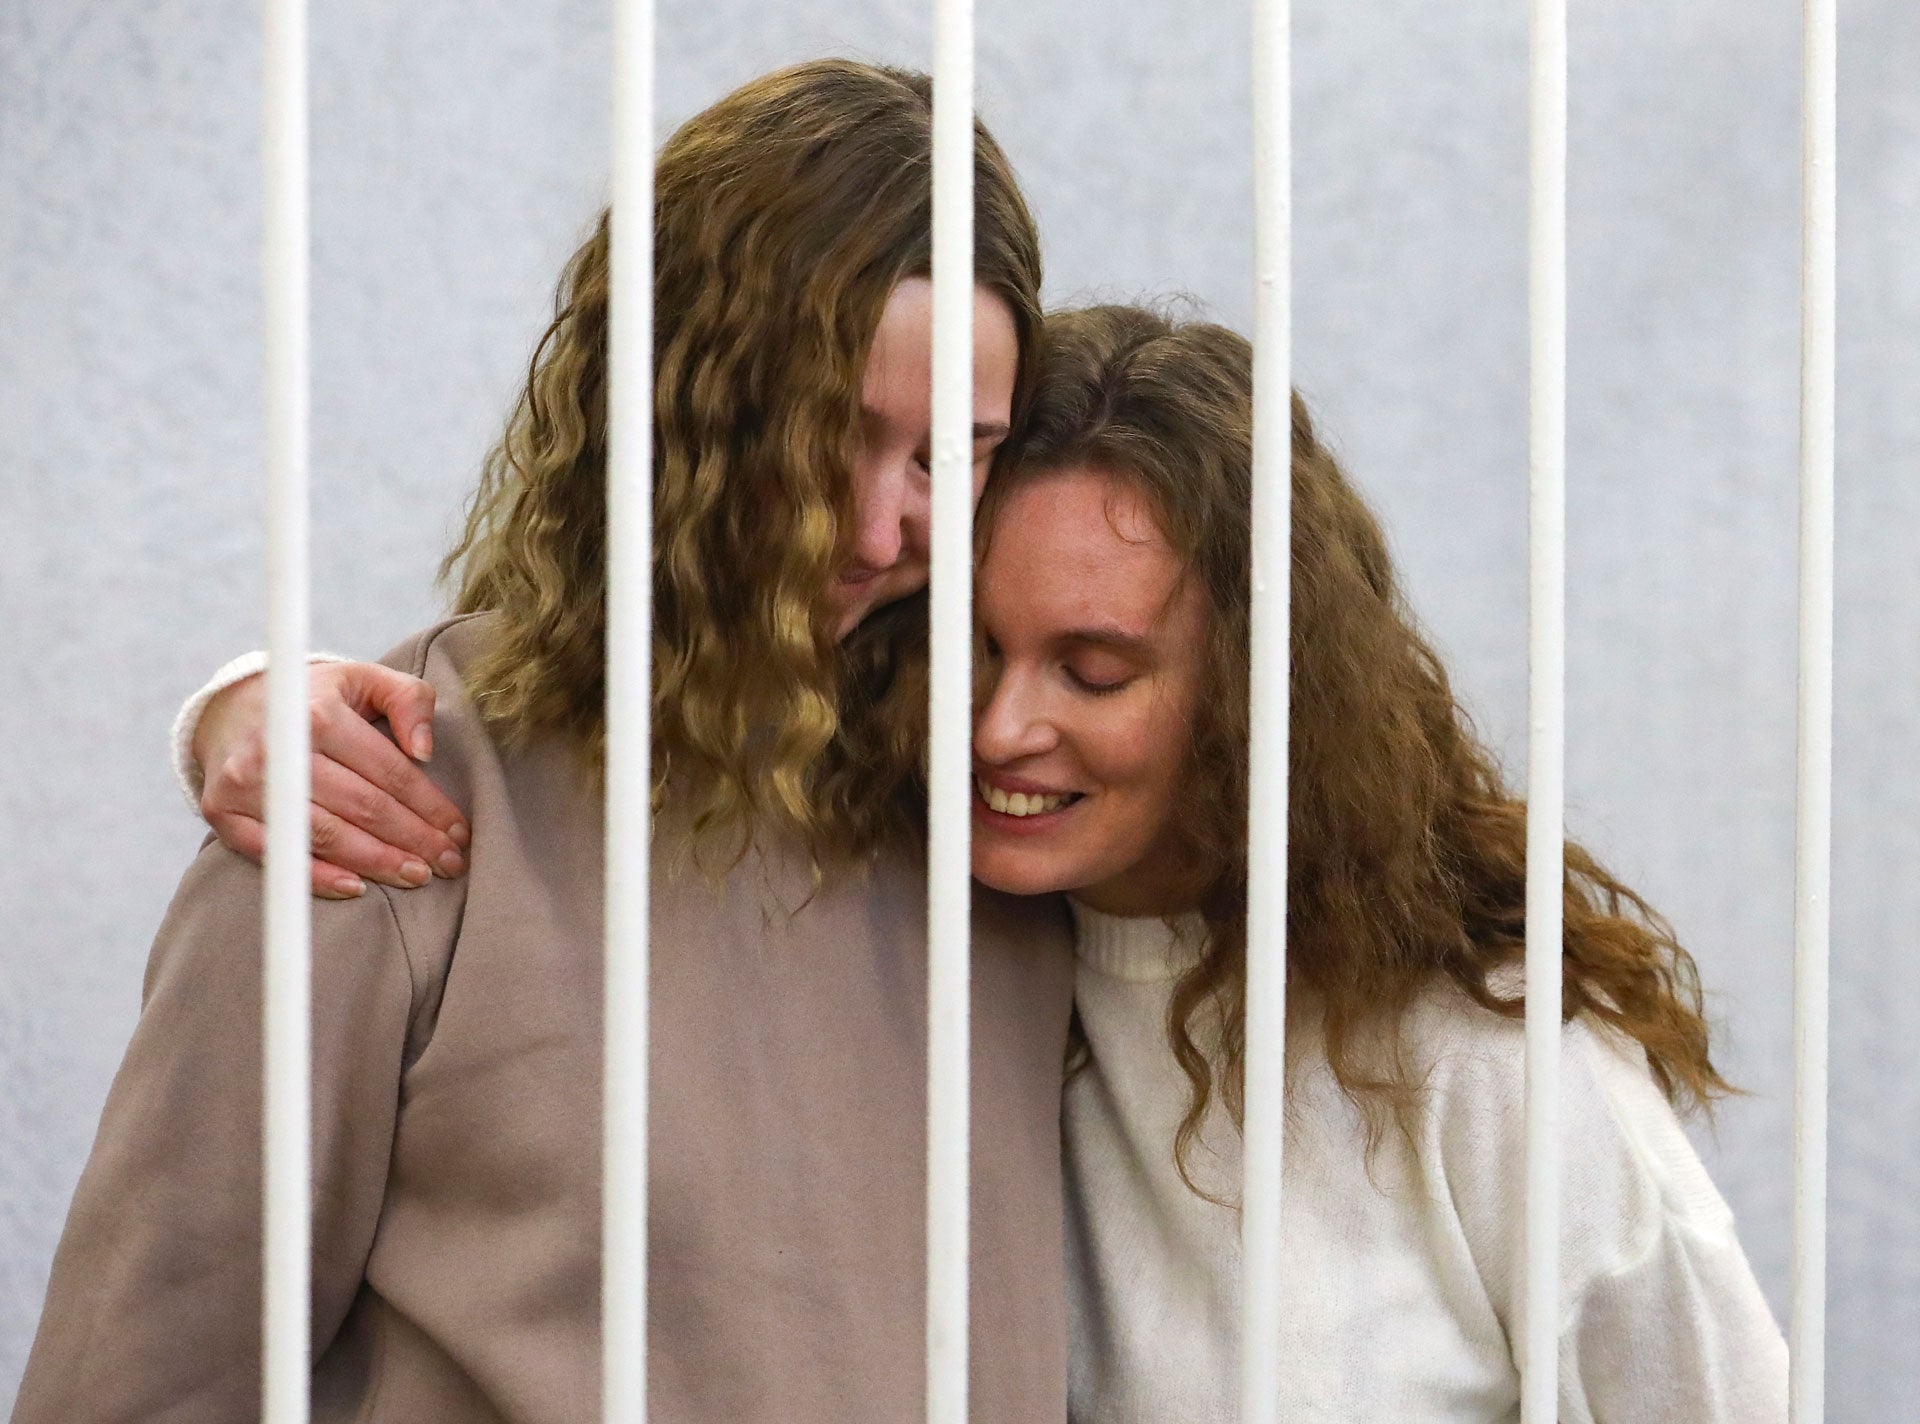 Журналистки Екатерина Андреева (Бахвалова) (справа) и Дарья Чульцова обнимаются в клетке подсудимых во время судебного заседания в Минске 9 февраля 2021 года.